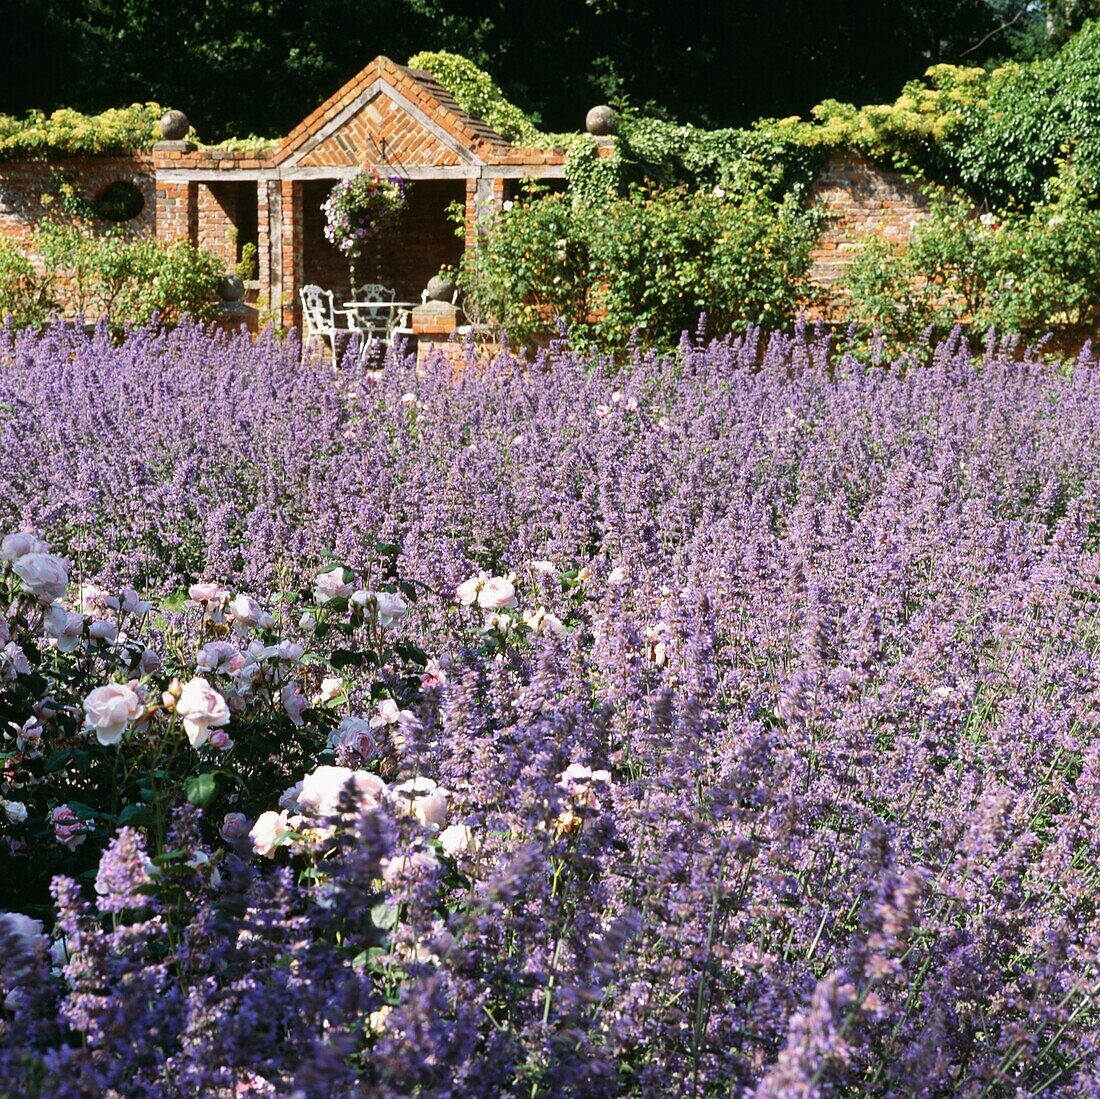 Gartenmöbel in einer gemauerten Pergola mit Lavendelfeldern